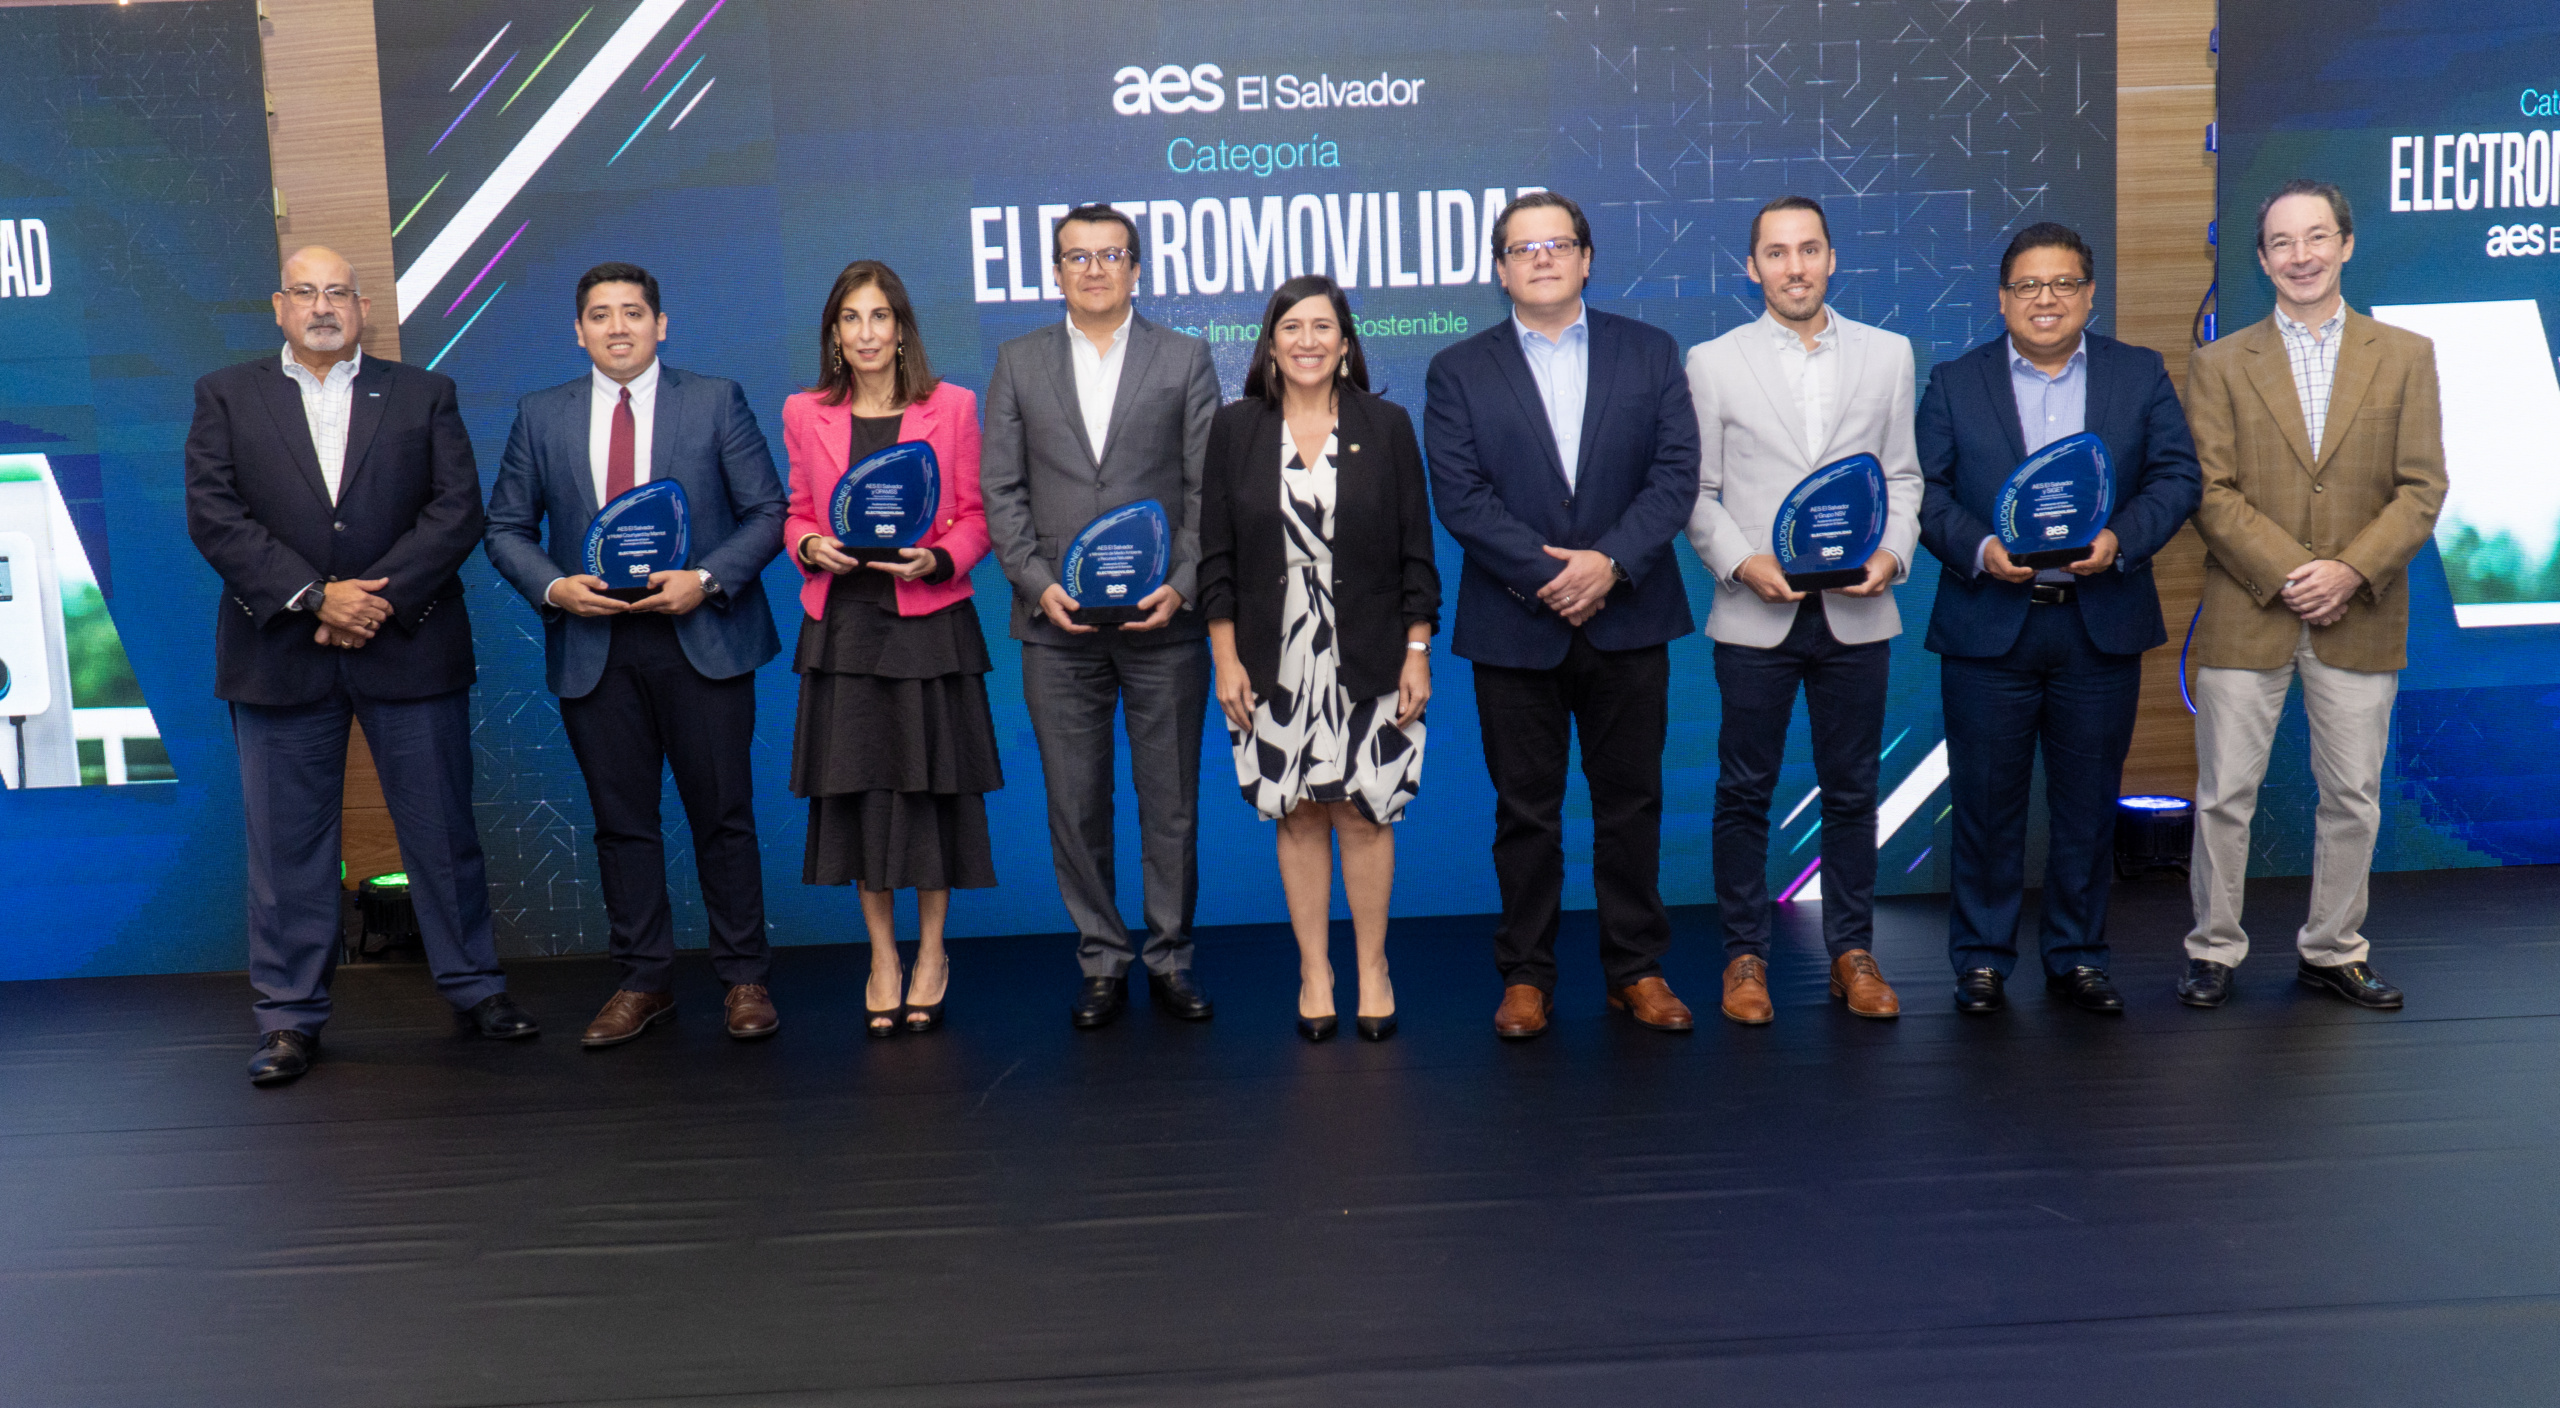 AES El Salvador reconoció a clientes junto a quienes ha apostado por la innovación sostenible